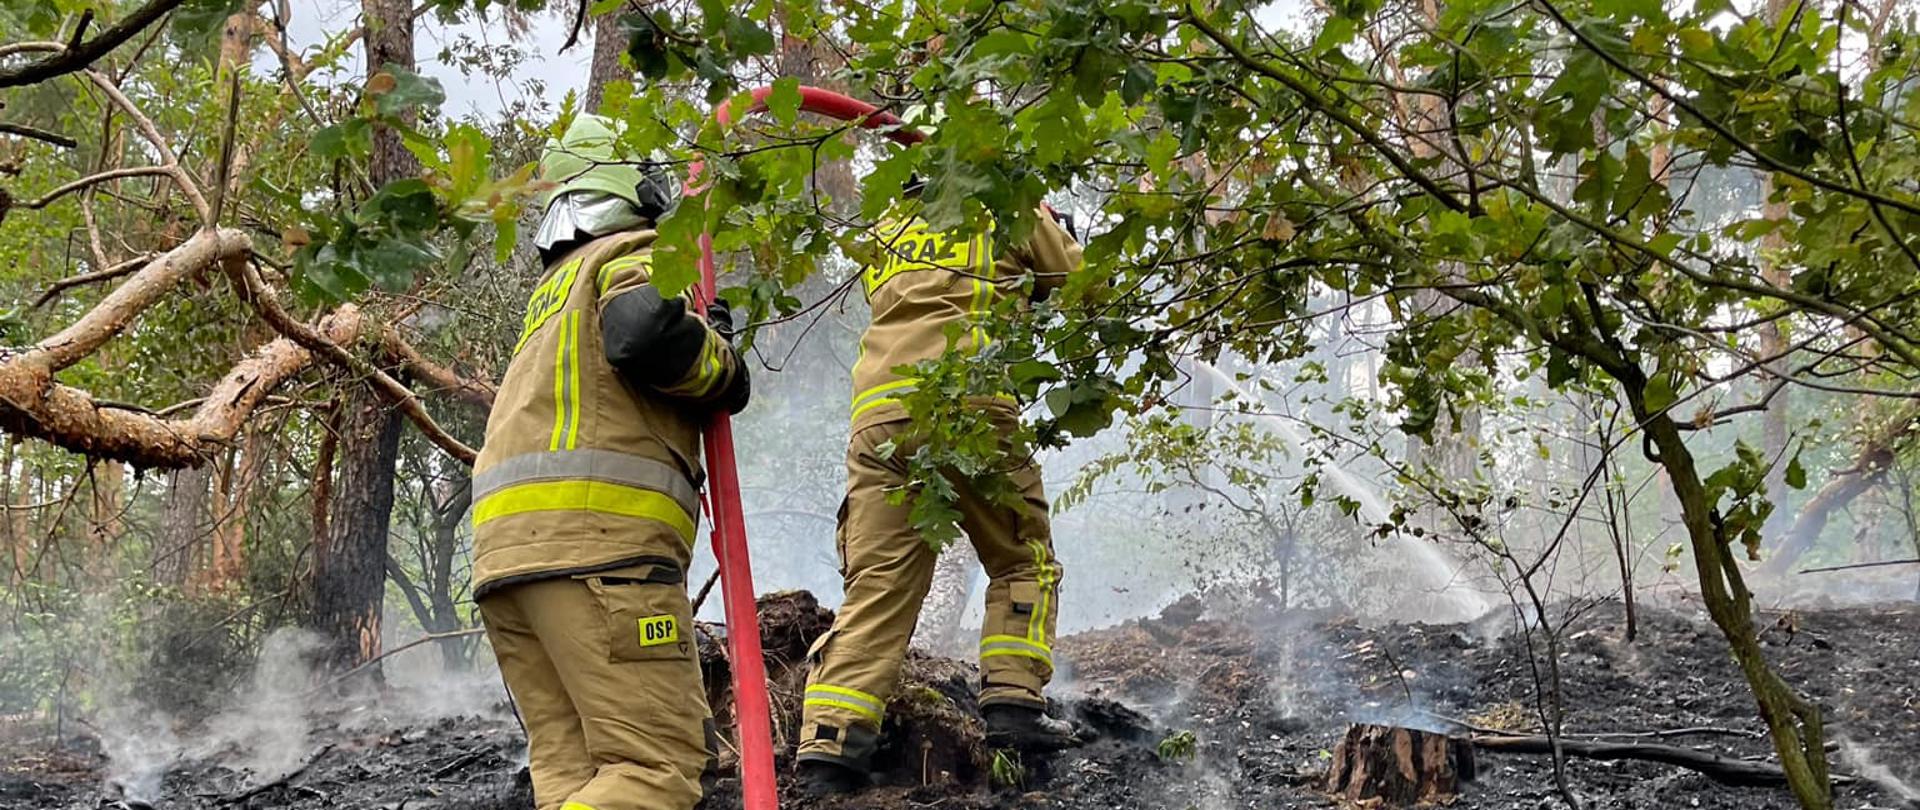 Zdjęcie przedstawia dwóch strażaków gaszących palącą się ściółkę leśną